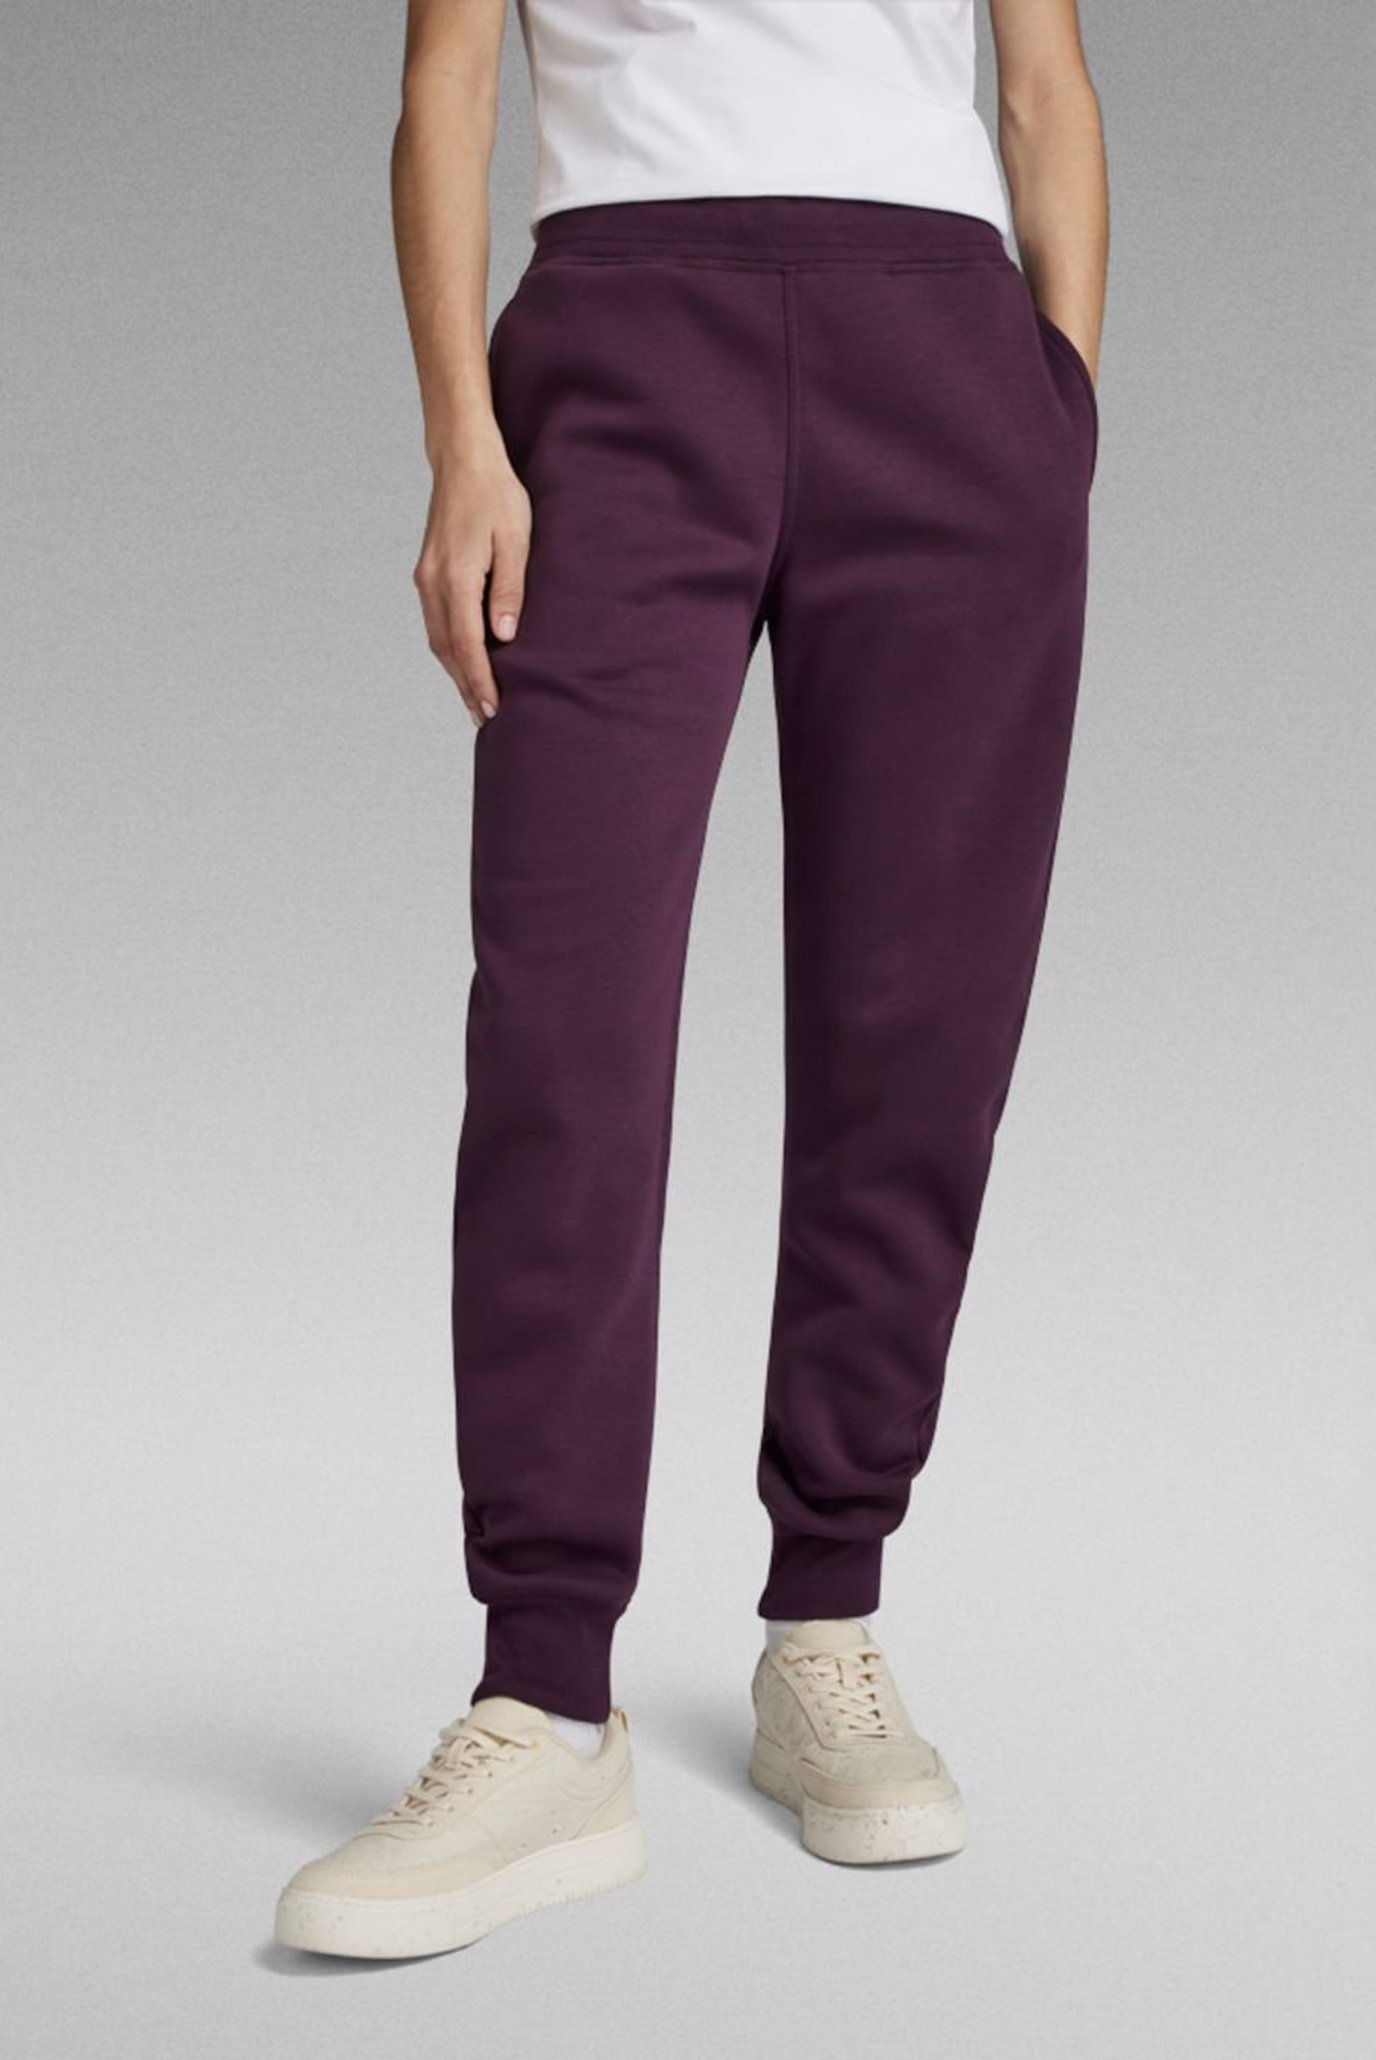 Женские фиолетовые спортивные брюки Premium core 2.0 1